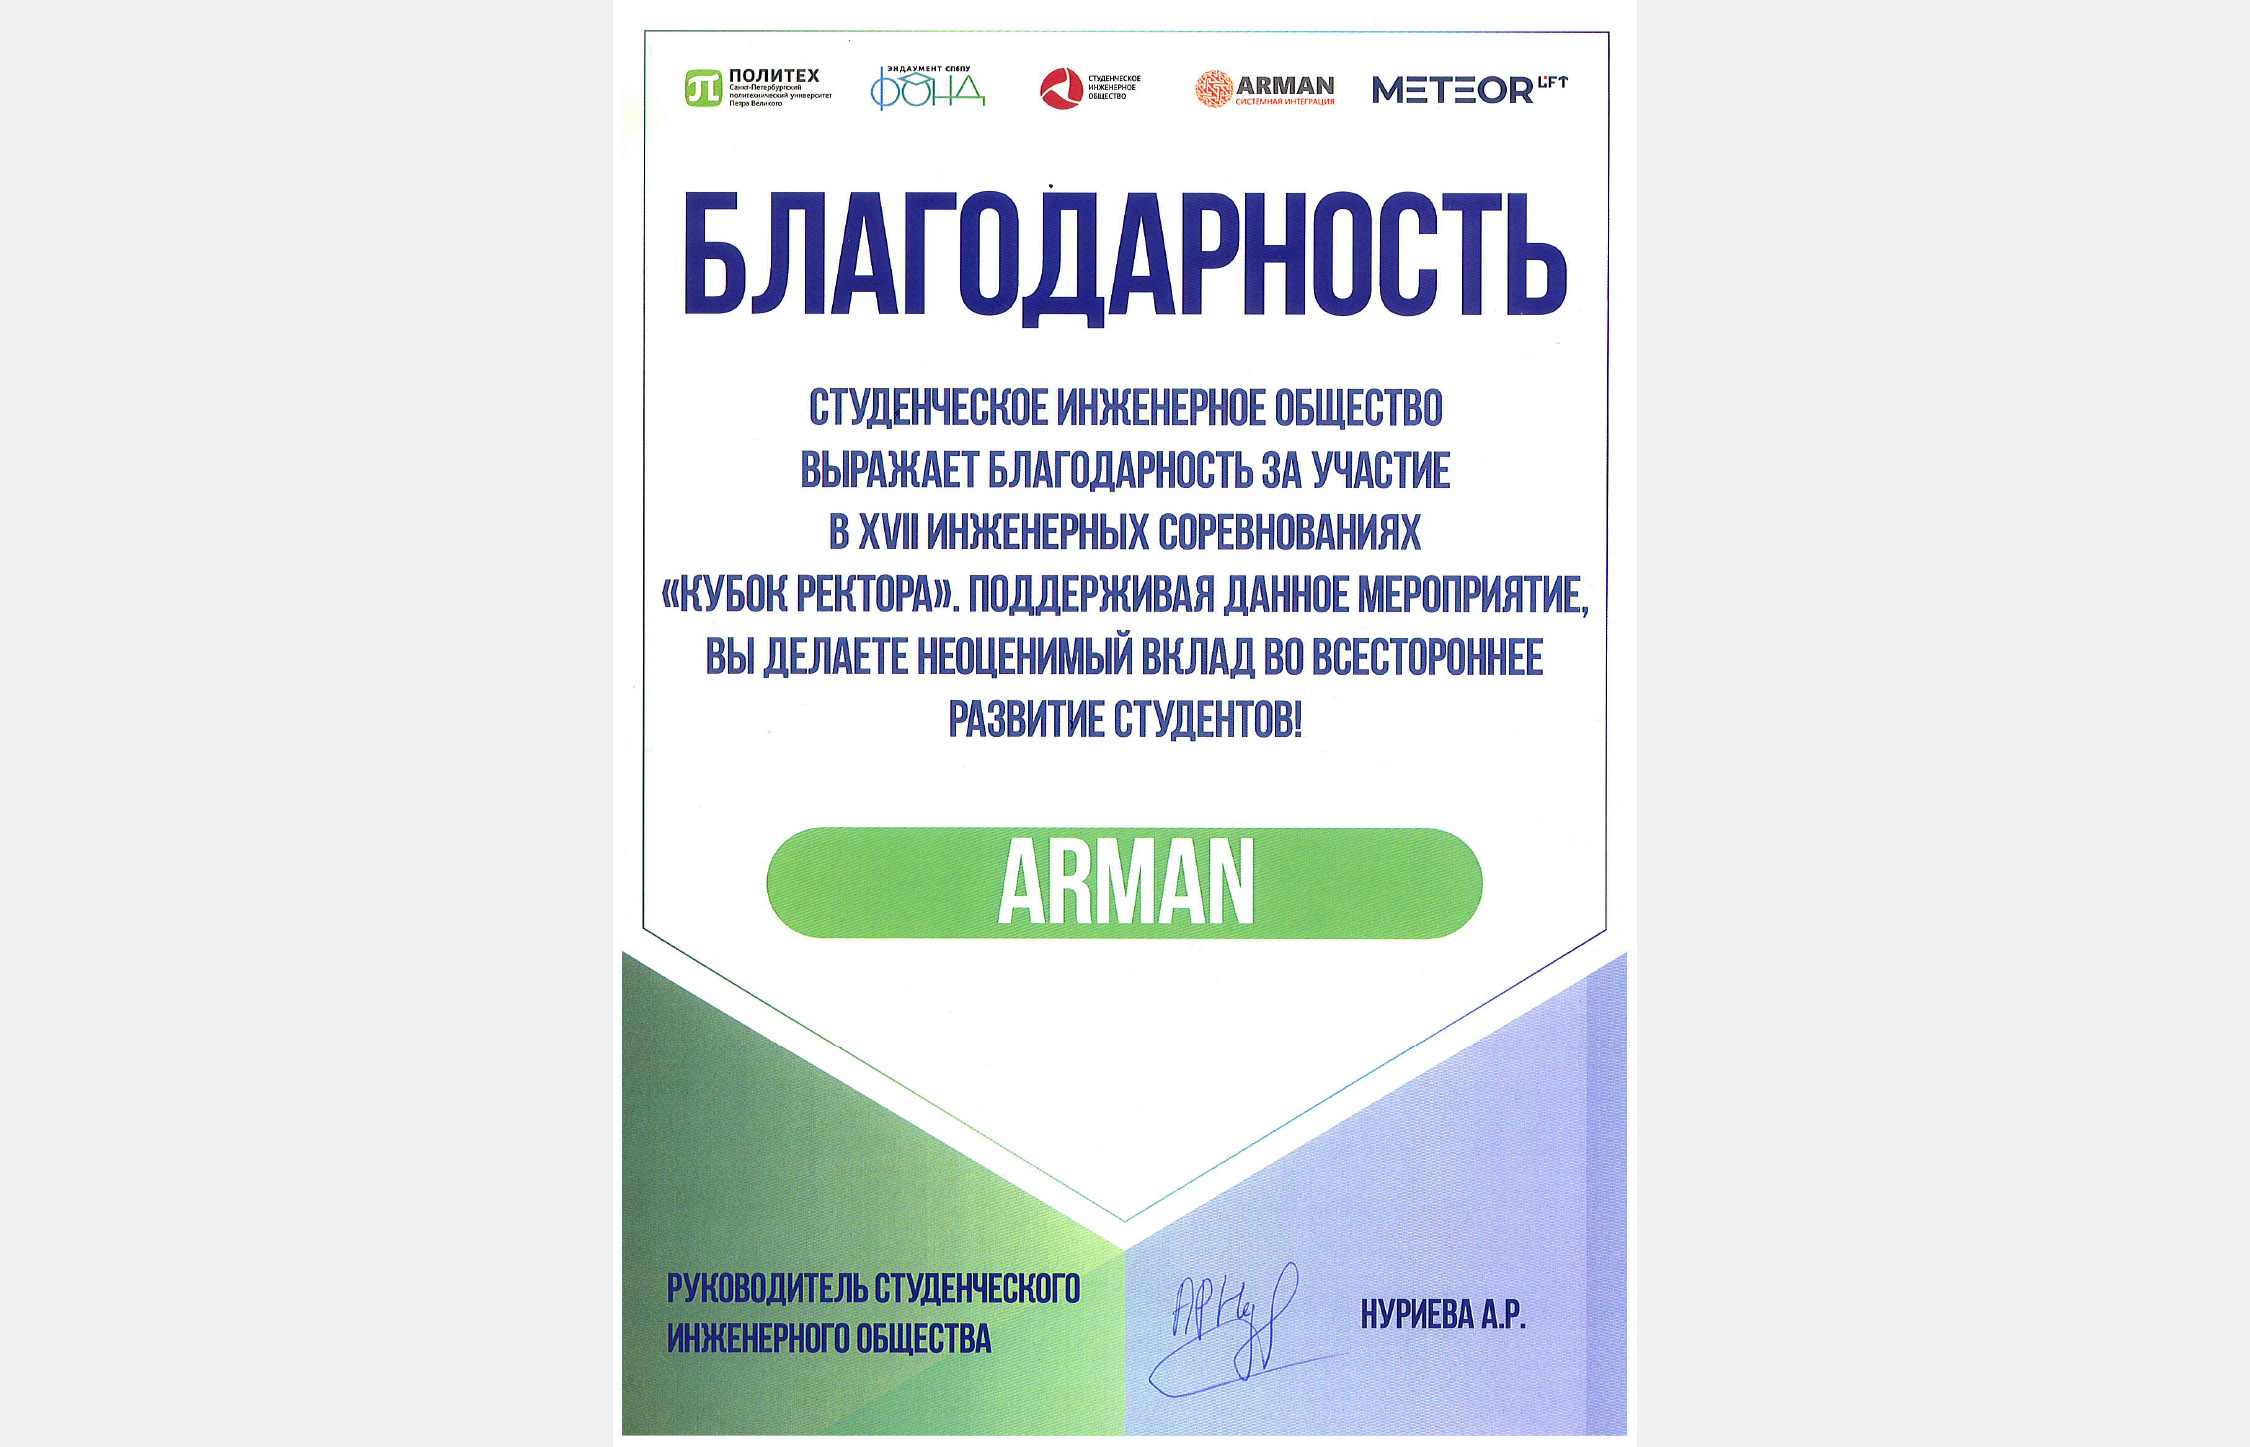 Компания "Арман" приняла участие в проекте "Кубок ректора" Политехнического университета Петра Великого